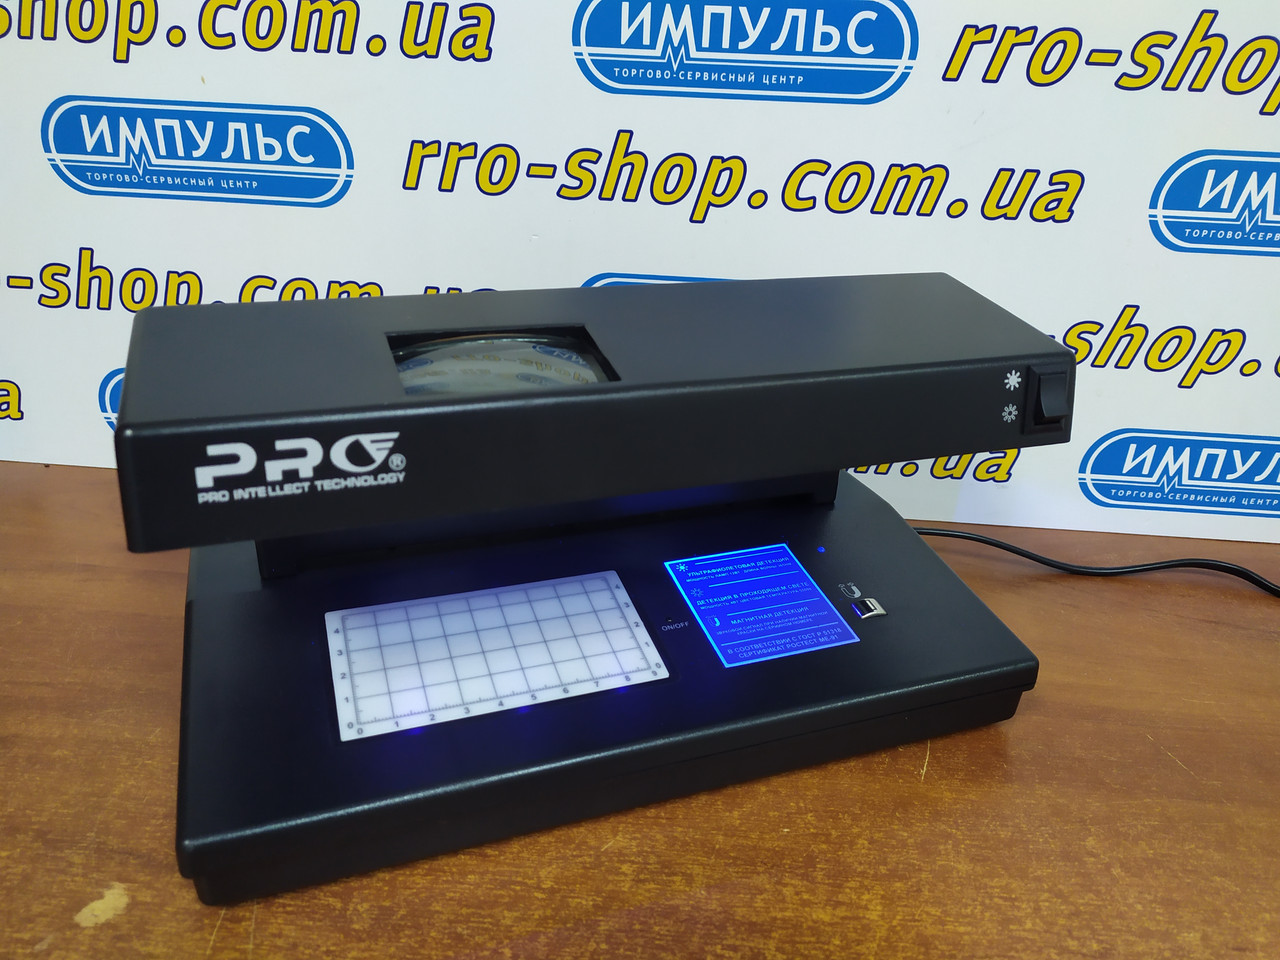 Світлодіодний детектор валют PRO-12 LPM LED